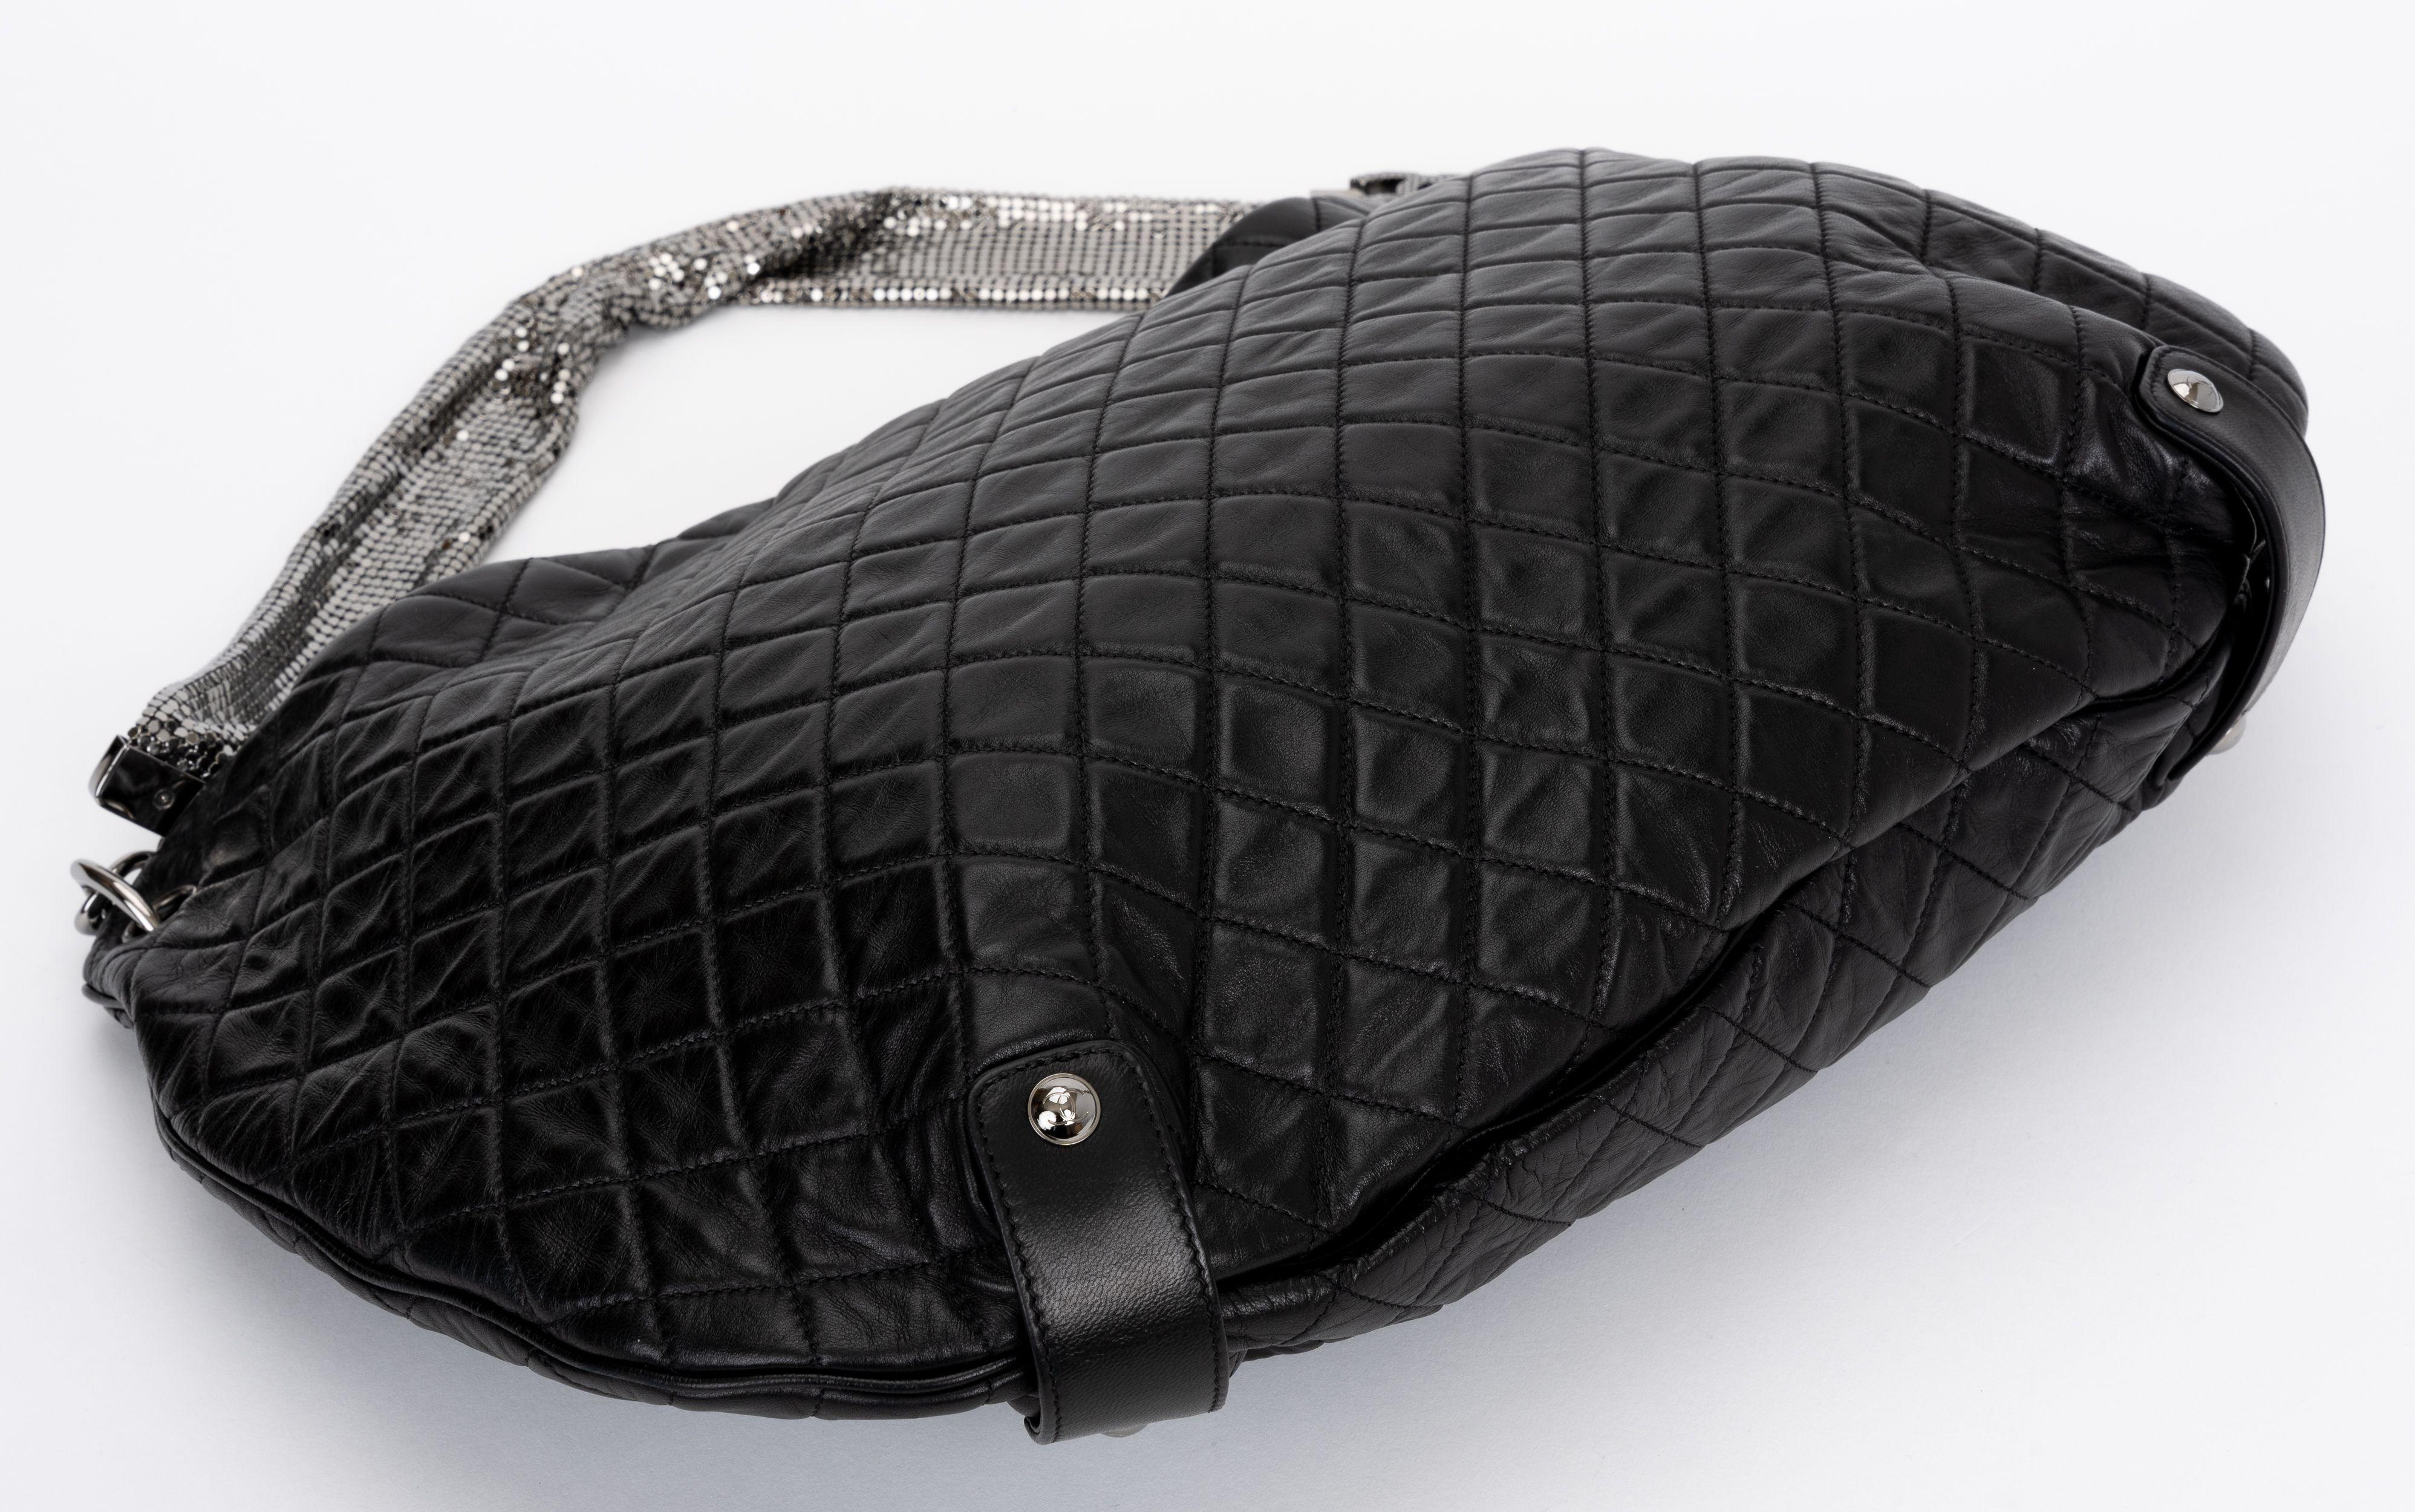 Die Chanel Black Quilted Lambskin Chain Mail Medium Hobo Bag hat ein schlabberiges Design für Tag und Nacht mit einem silbernen Netzriemen.
Schulterhöhe 9